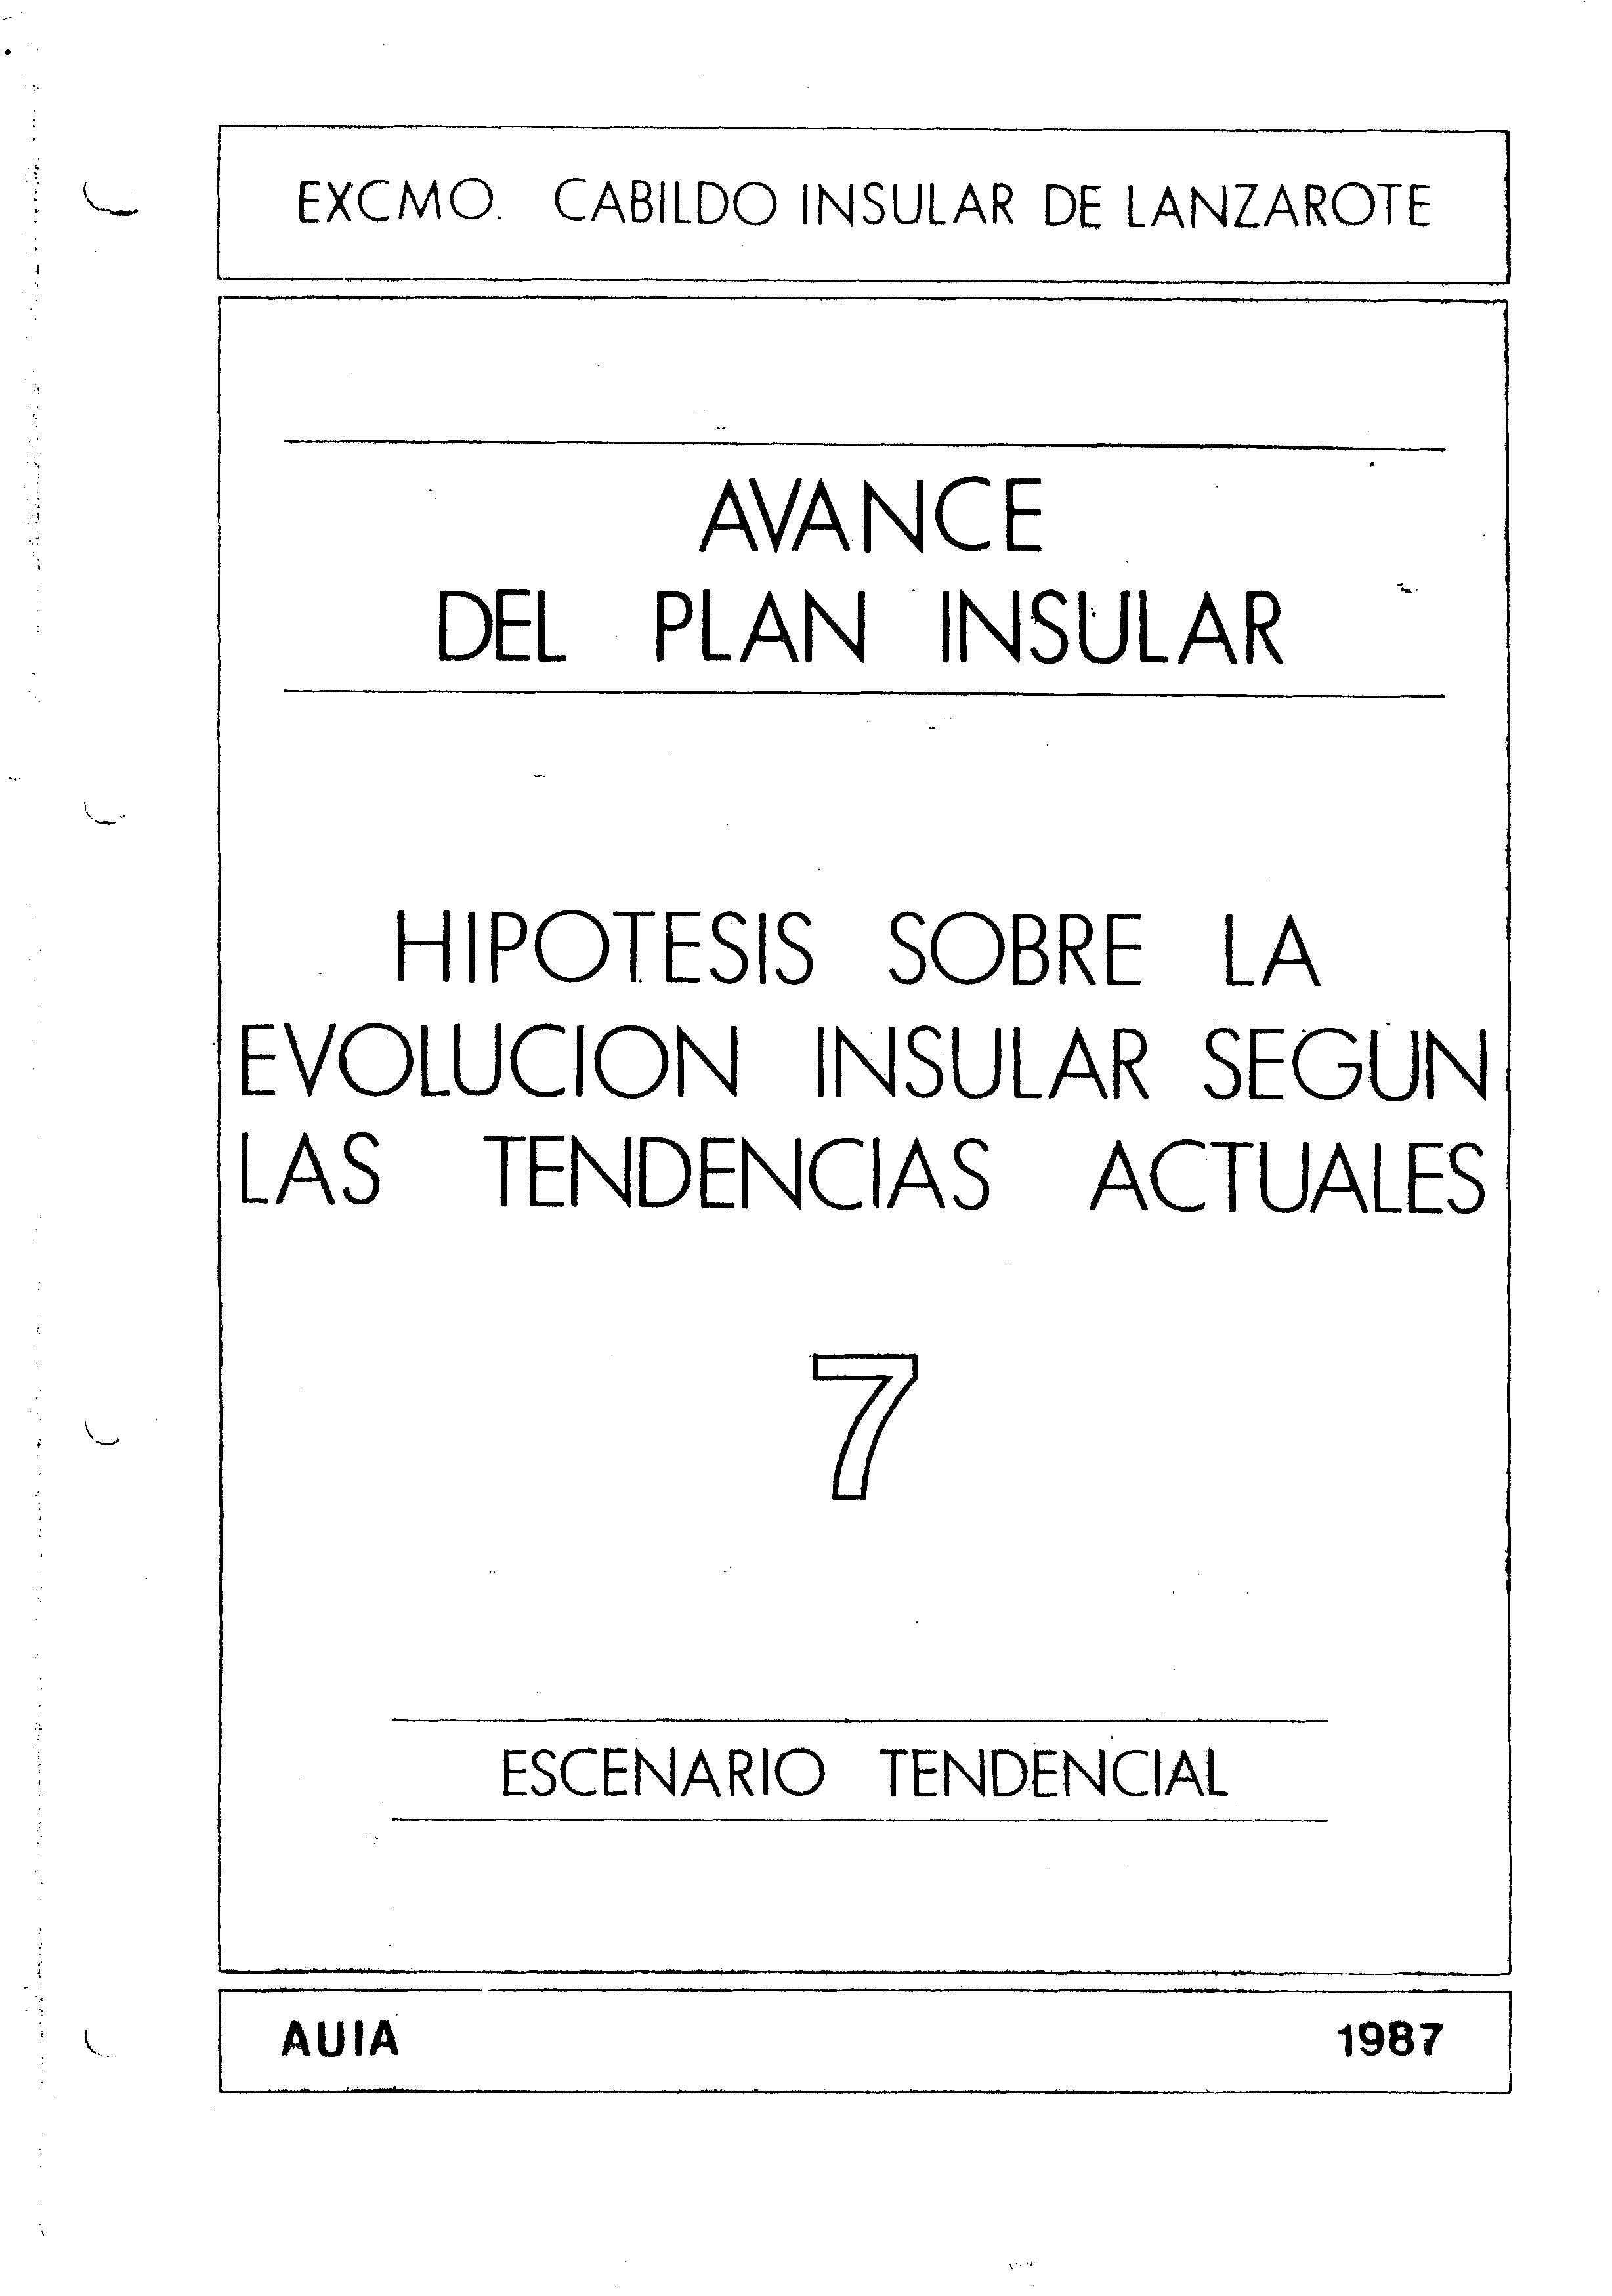 Tomo 7. Escenario Tendencial. Avance Plan Insular (1987)